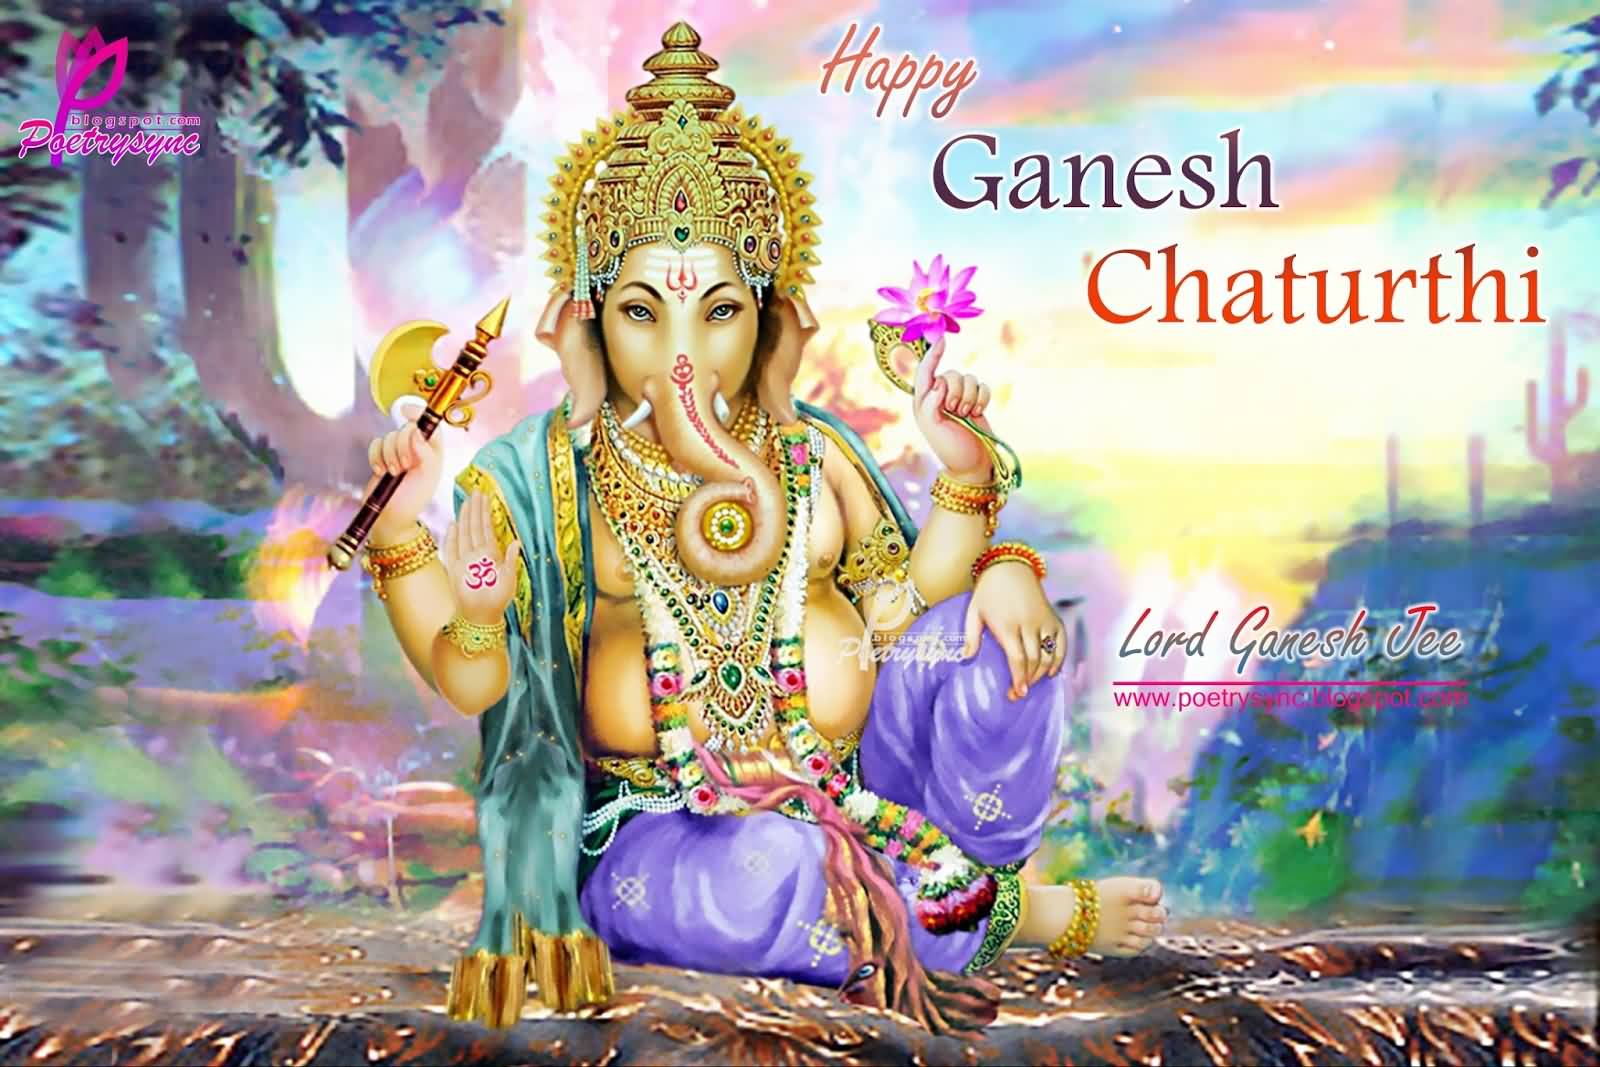 Happy Ganesh Chaturthi 2016